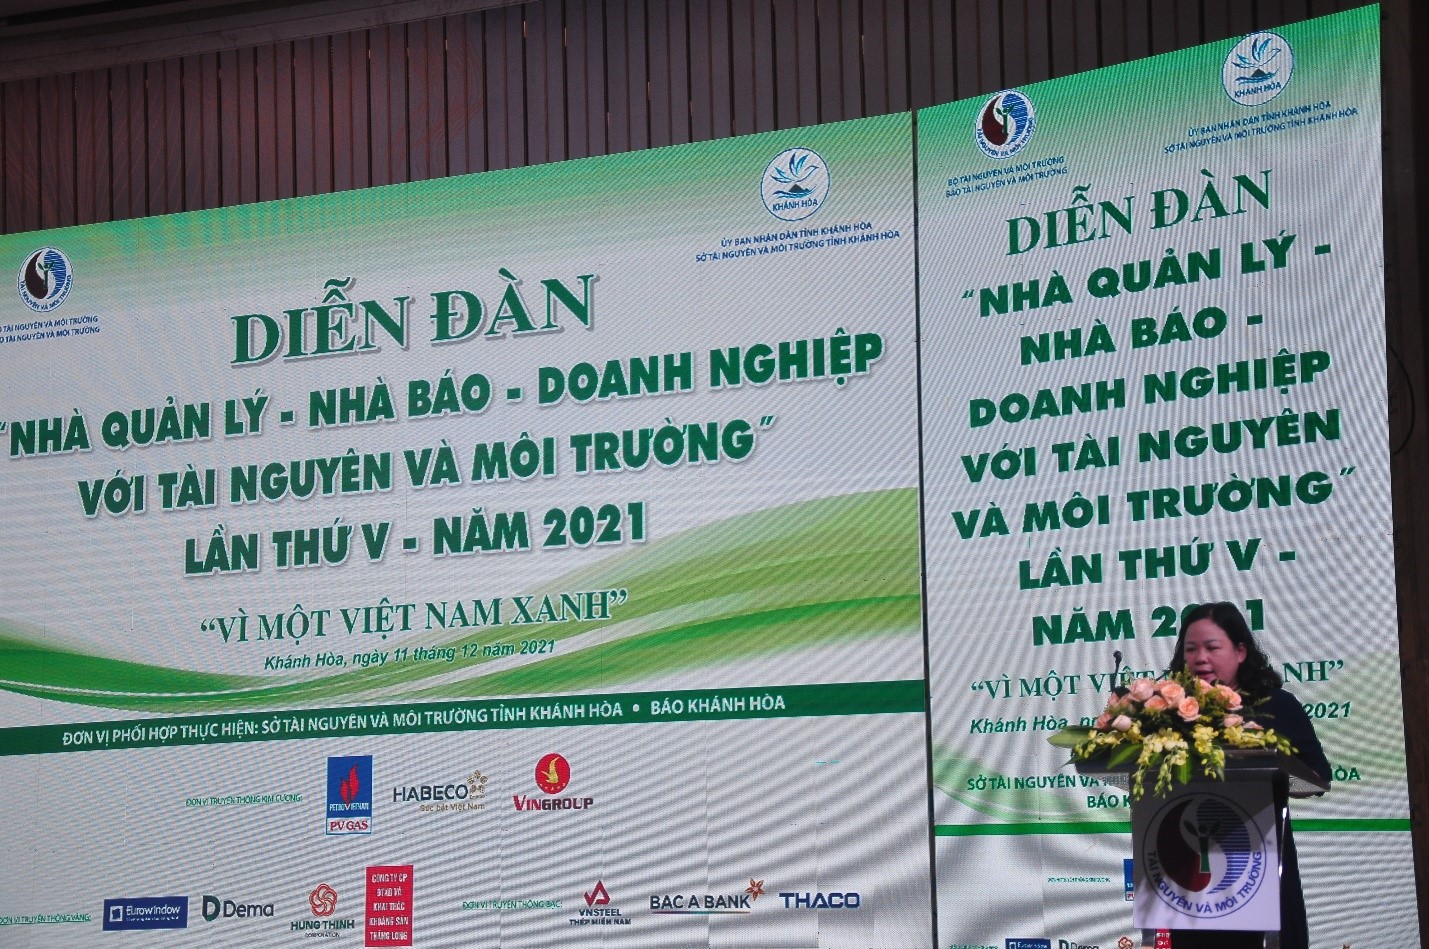 Bà Nguyễn Thị Thu Hoài Phó Vụ Trưởng Vụ Tuyên Truyền, Ban Tuyên Giáo TW tham luận công tác tuyên truyền về bảo vệ tài nguyên môi trường biển đảo